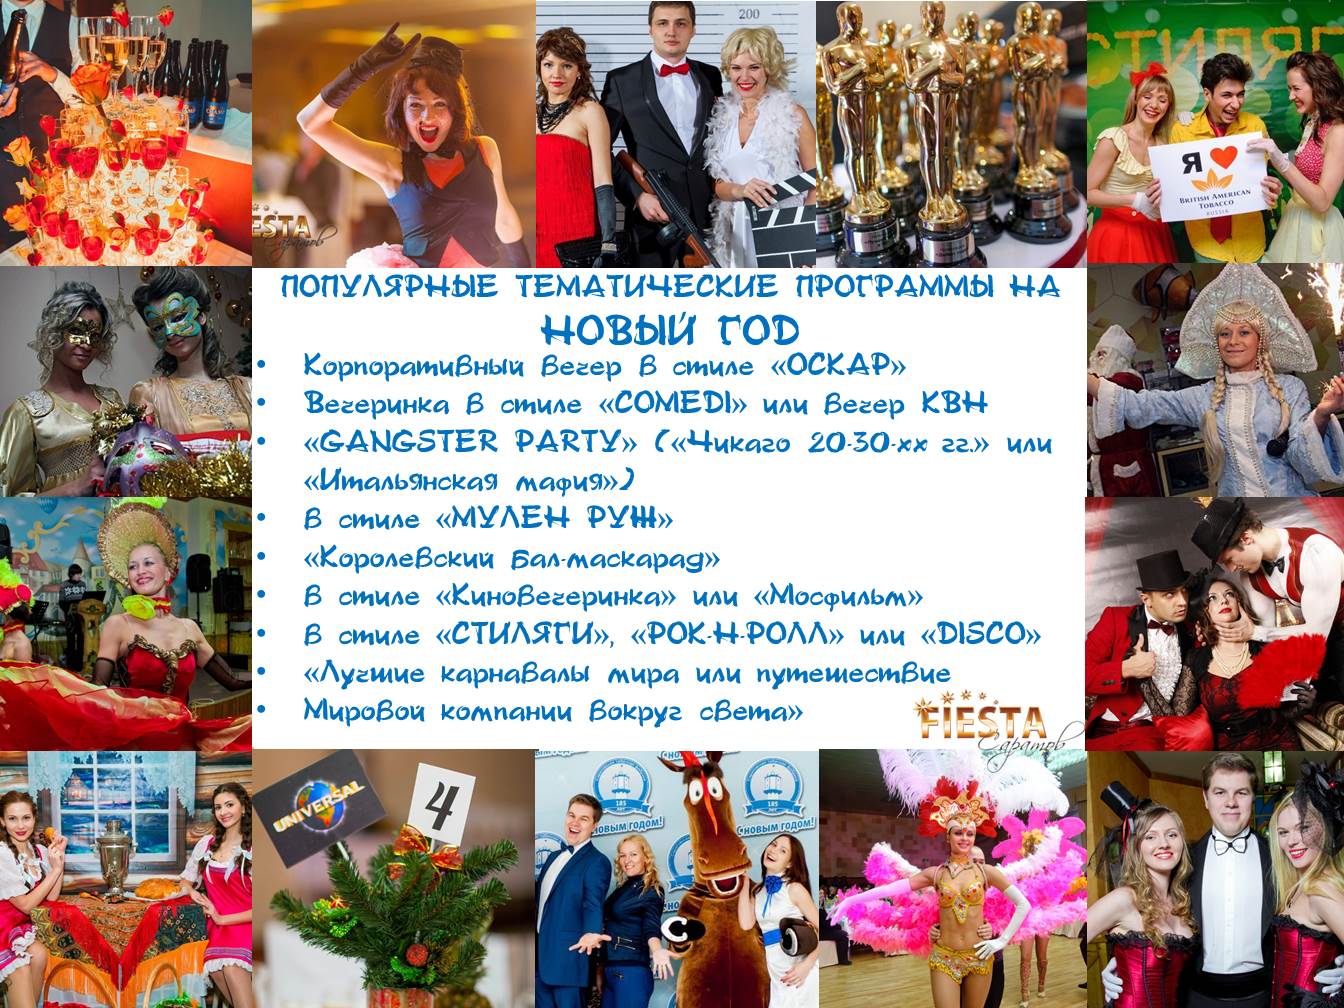 Novogodišnja korporativna zabava 2020: kako se zabaviti i lijepo proslaviti u Čeljabinsku